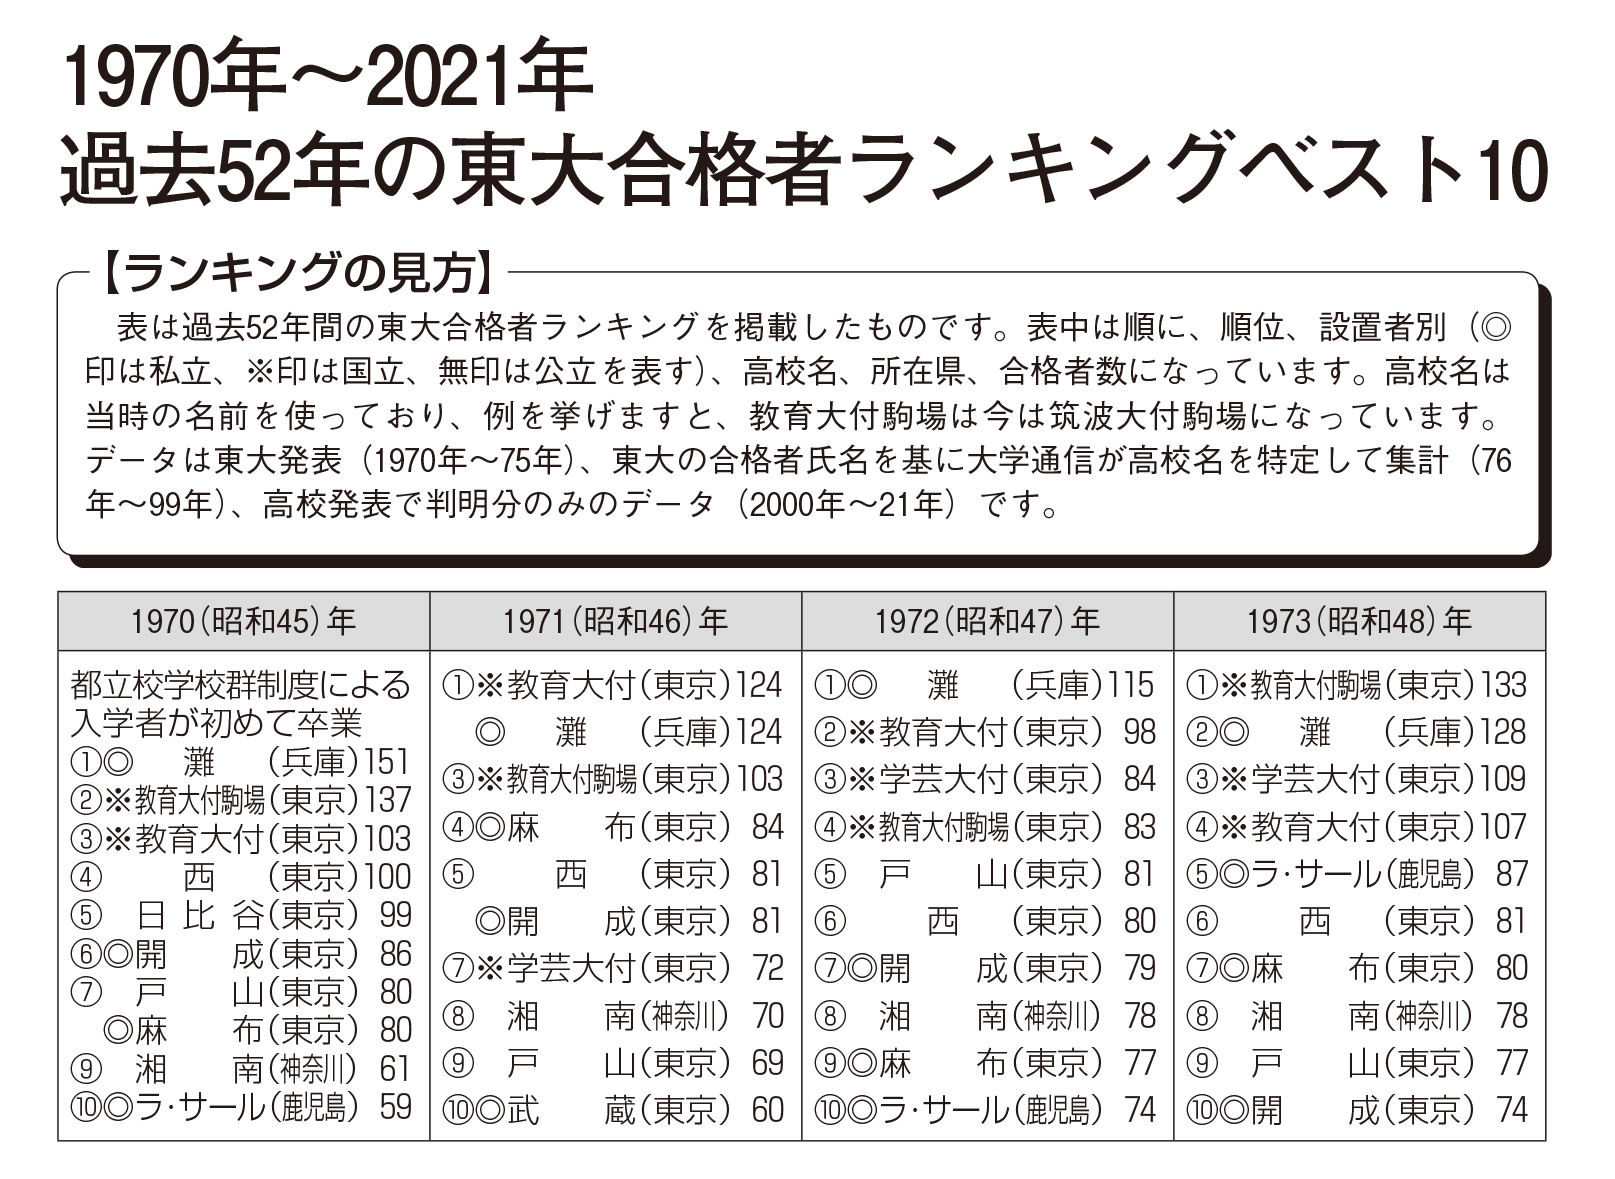 数 東大 合格 筑駒 者 2022 過去15年間の東大合格者数推移と「神7」の変遷（開成、筑駒、灘、桜蔭、渋幕）